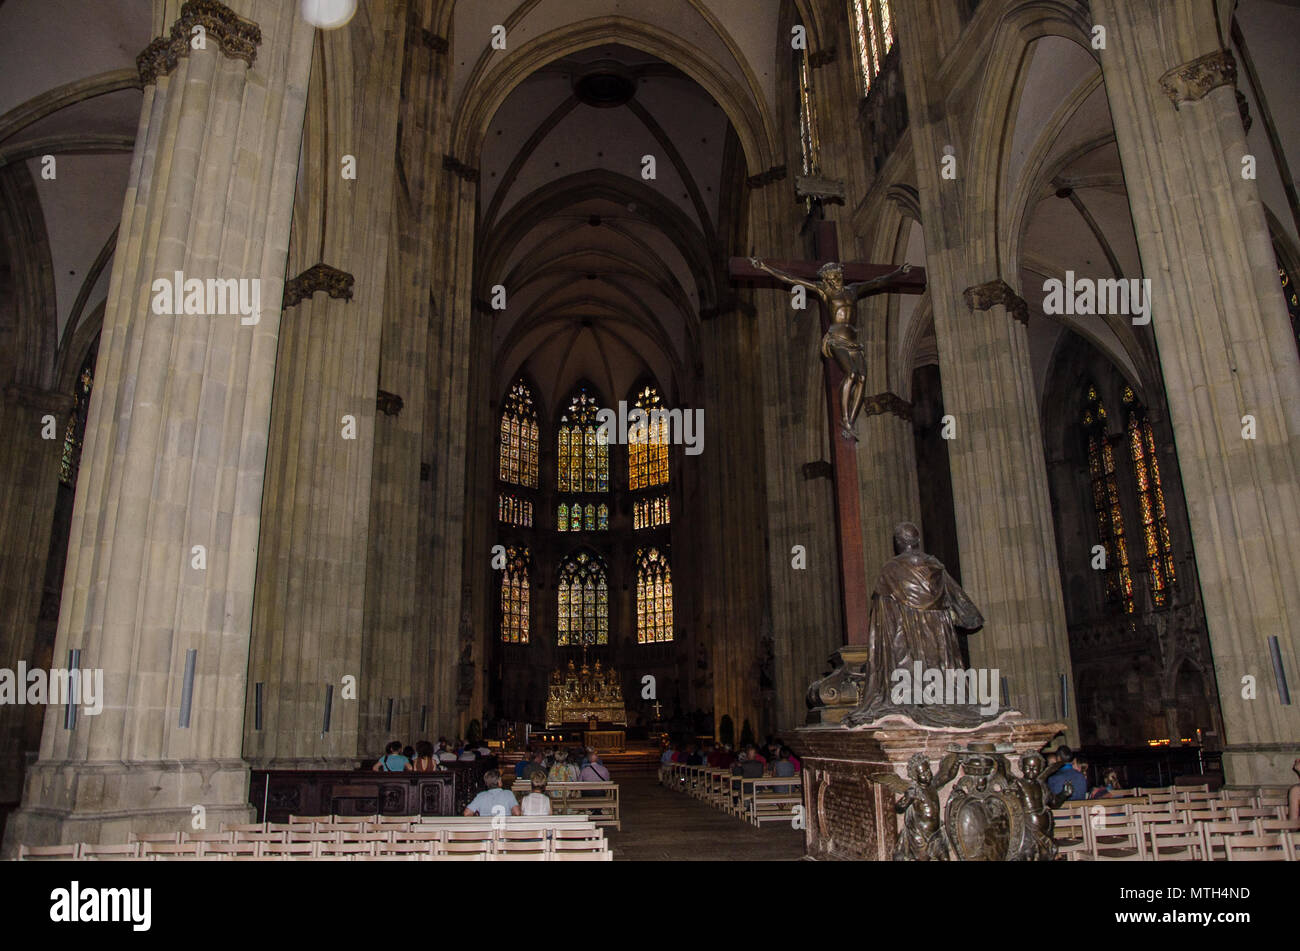 Das Regensburger St. Peter gewidmet ist, ist die wichtigste Kirche und Wahrzeichen der Stadt Regensburg, Deutschland. Stockfoto